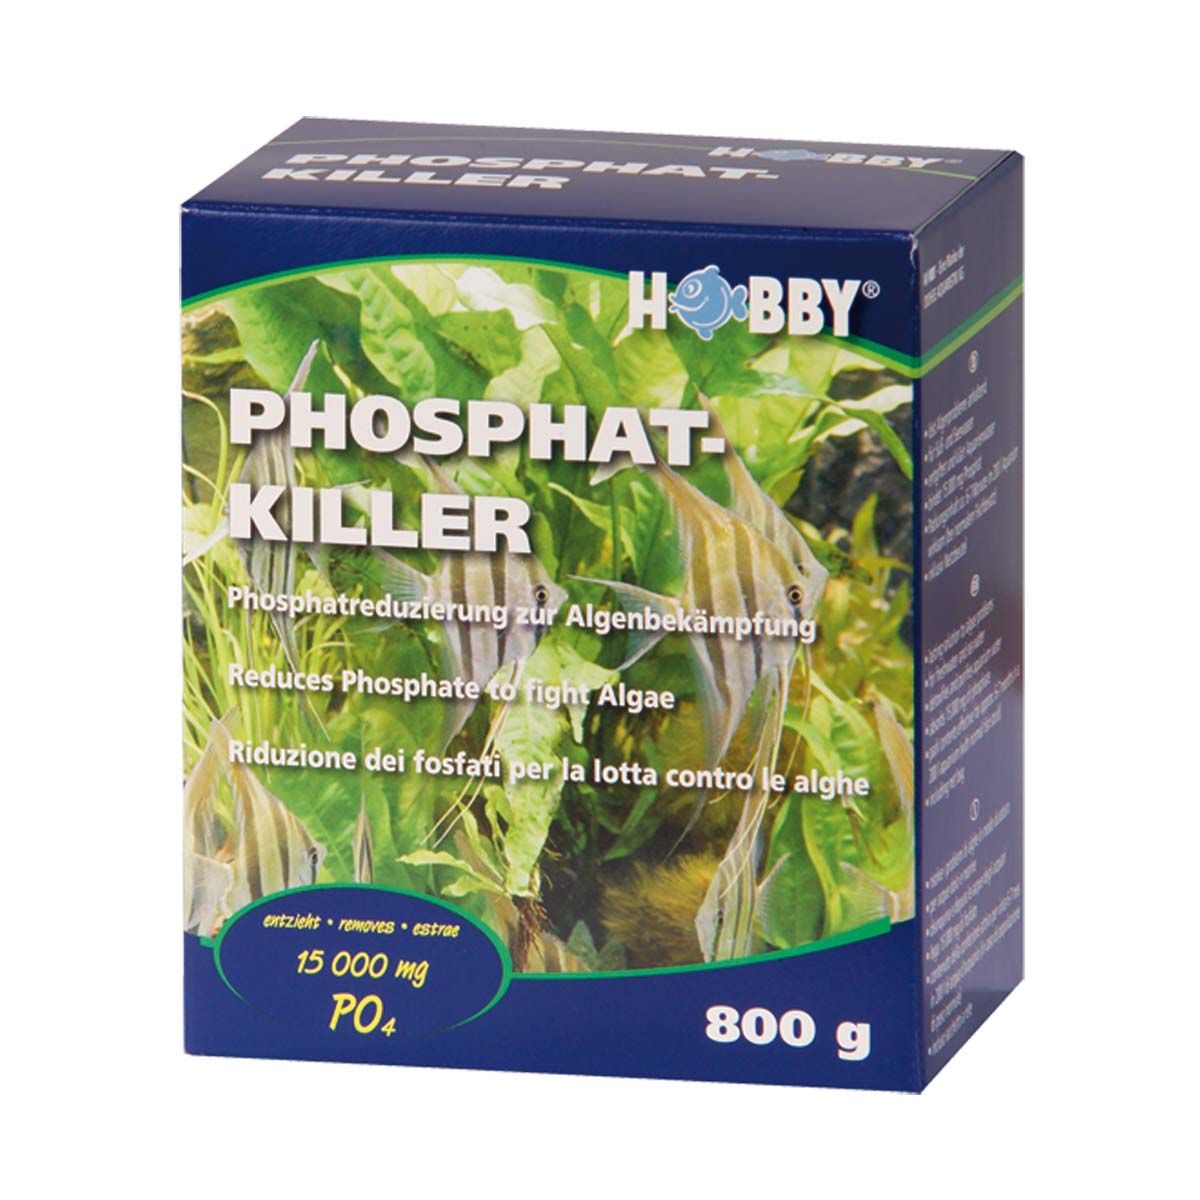 Hobby Phosphat-Killer - bindet 15.000 mg Phosphat